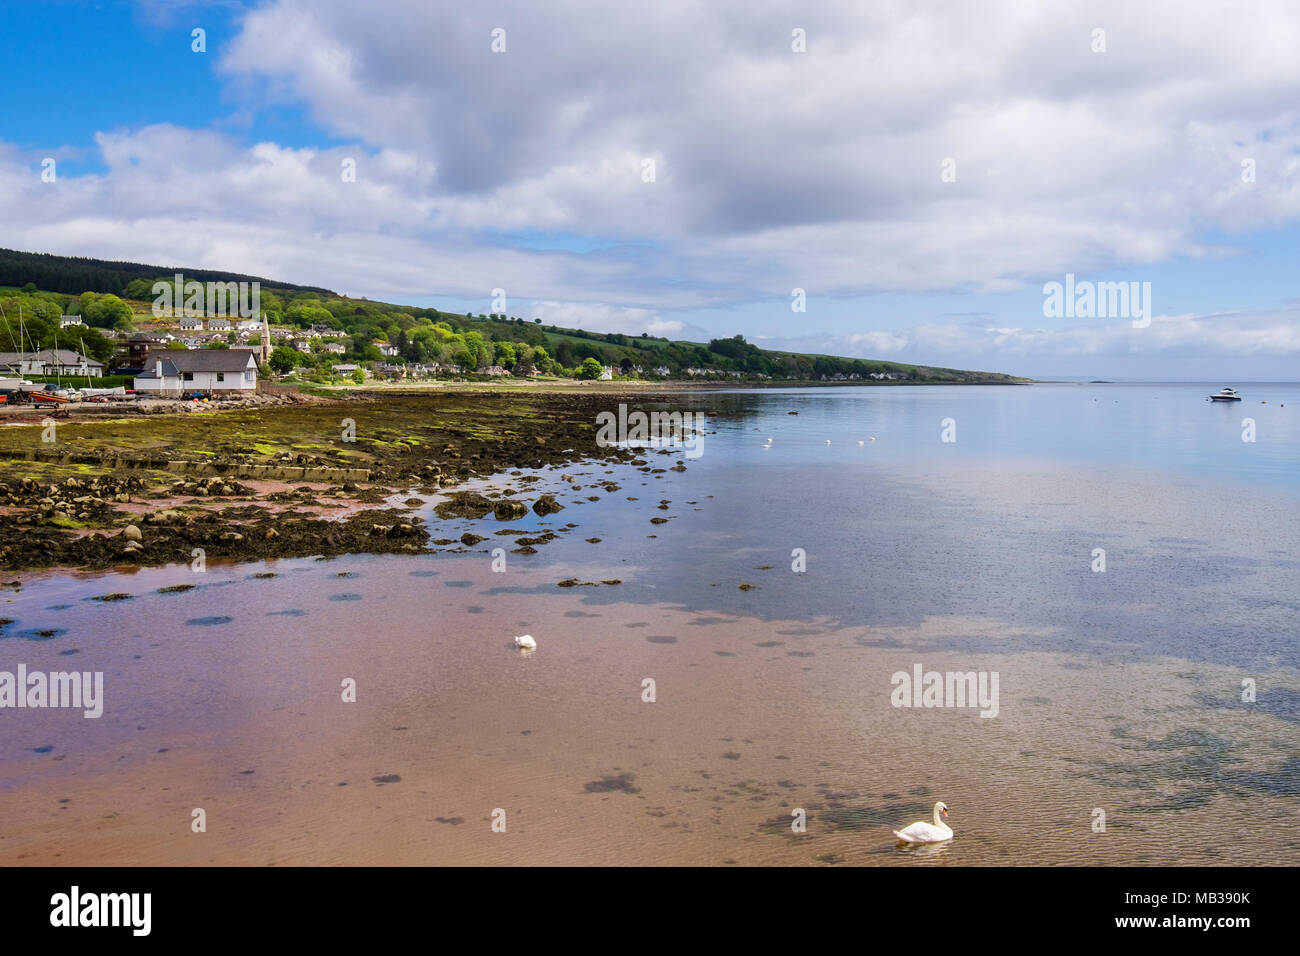 Lamlash Bay n. Prendere la zona (NTZ) stabilito per proteggere maërl letti e rigenerazione della vita marina. Lamlash, Isle of Arran, Scozia, Regno Unito, Gran Bretagna Foto Stock